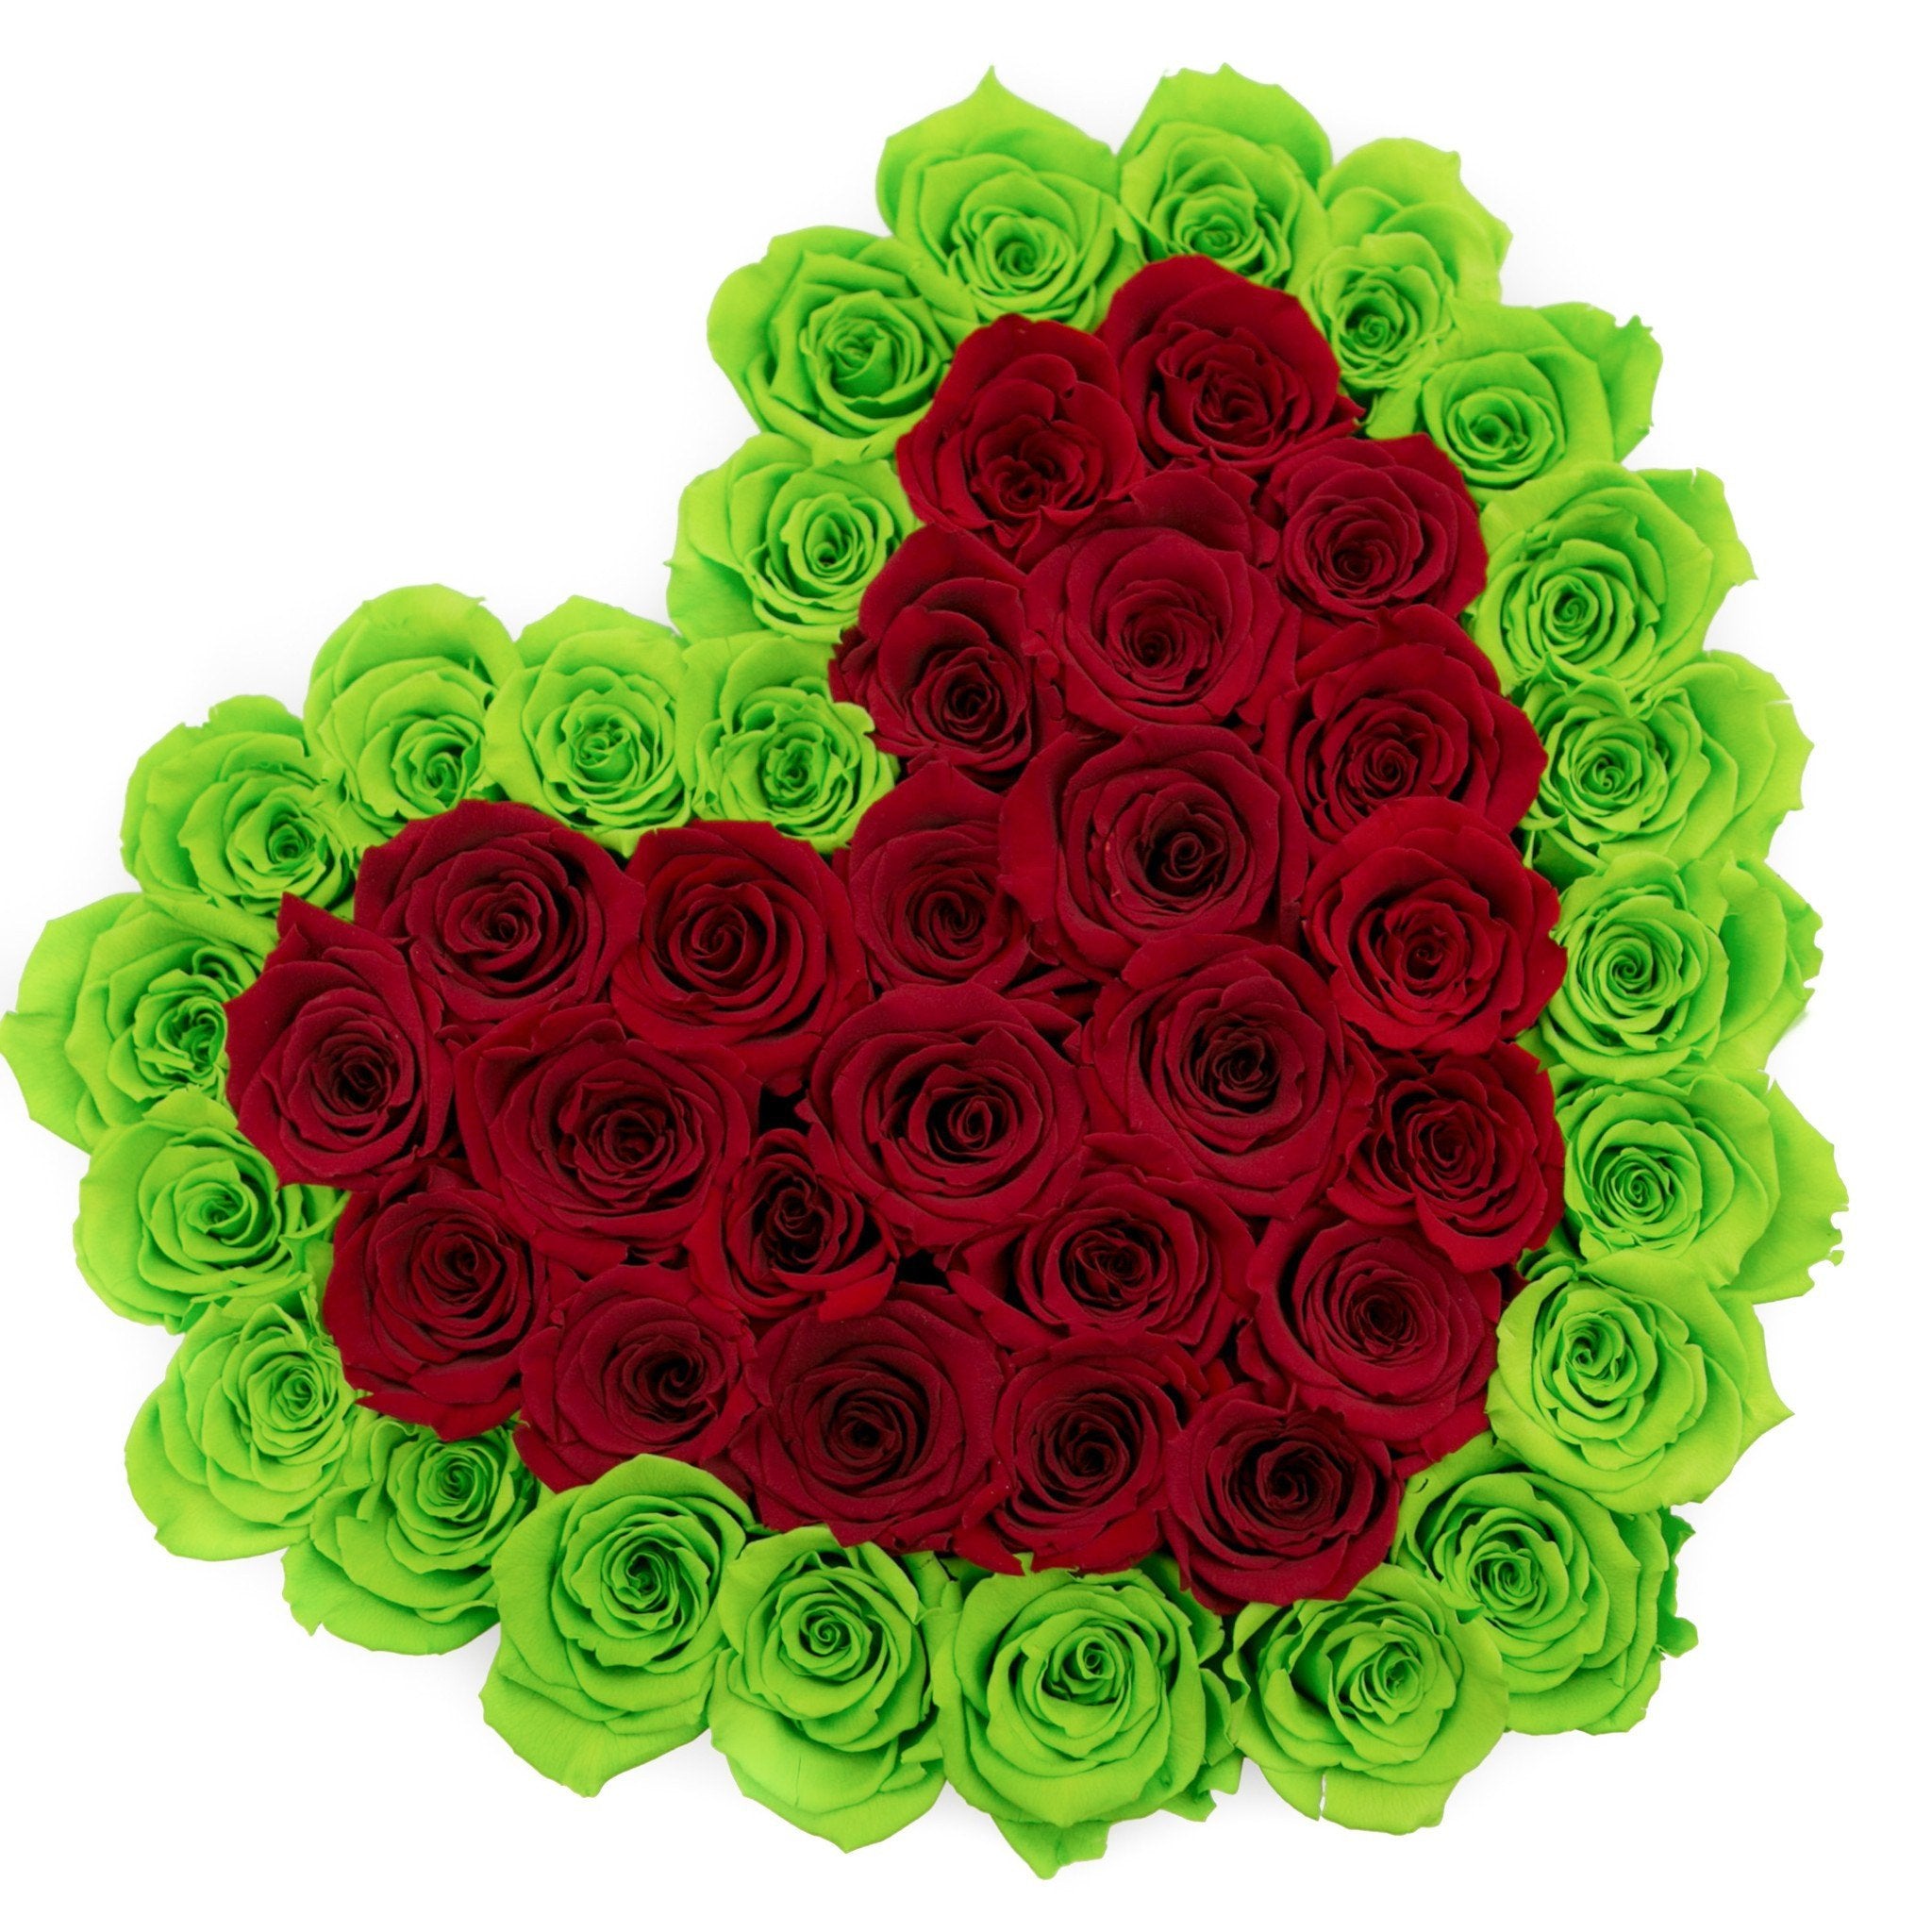 LOVE box - black - light-green&red roses green eternity roses - the million roses